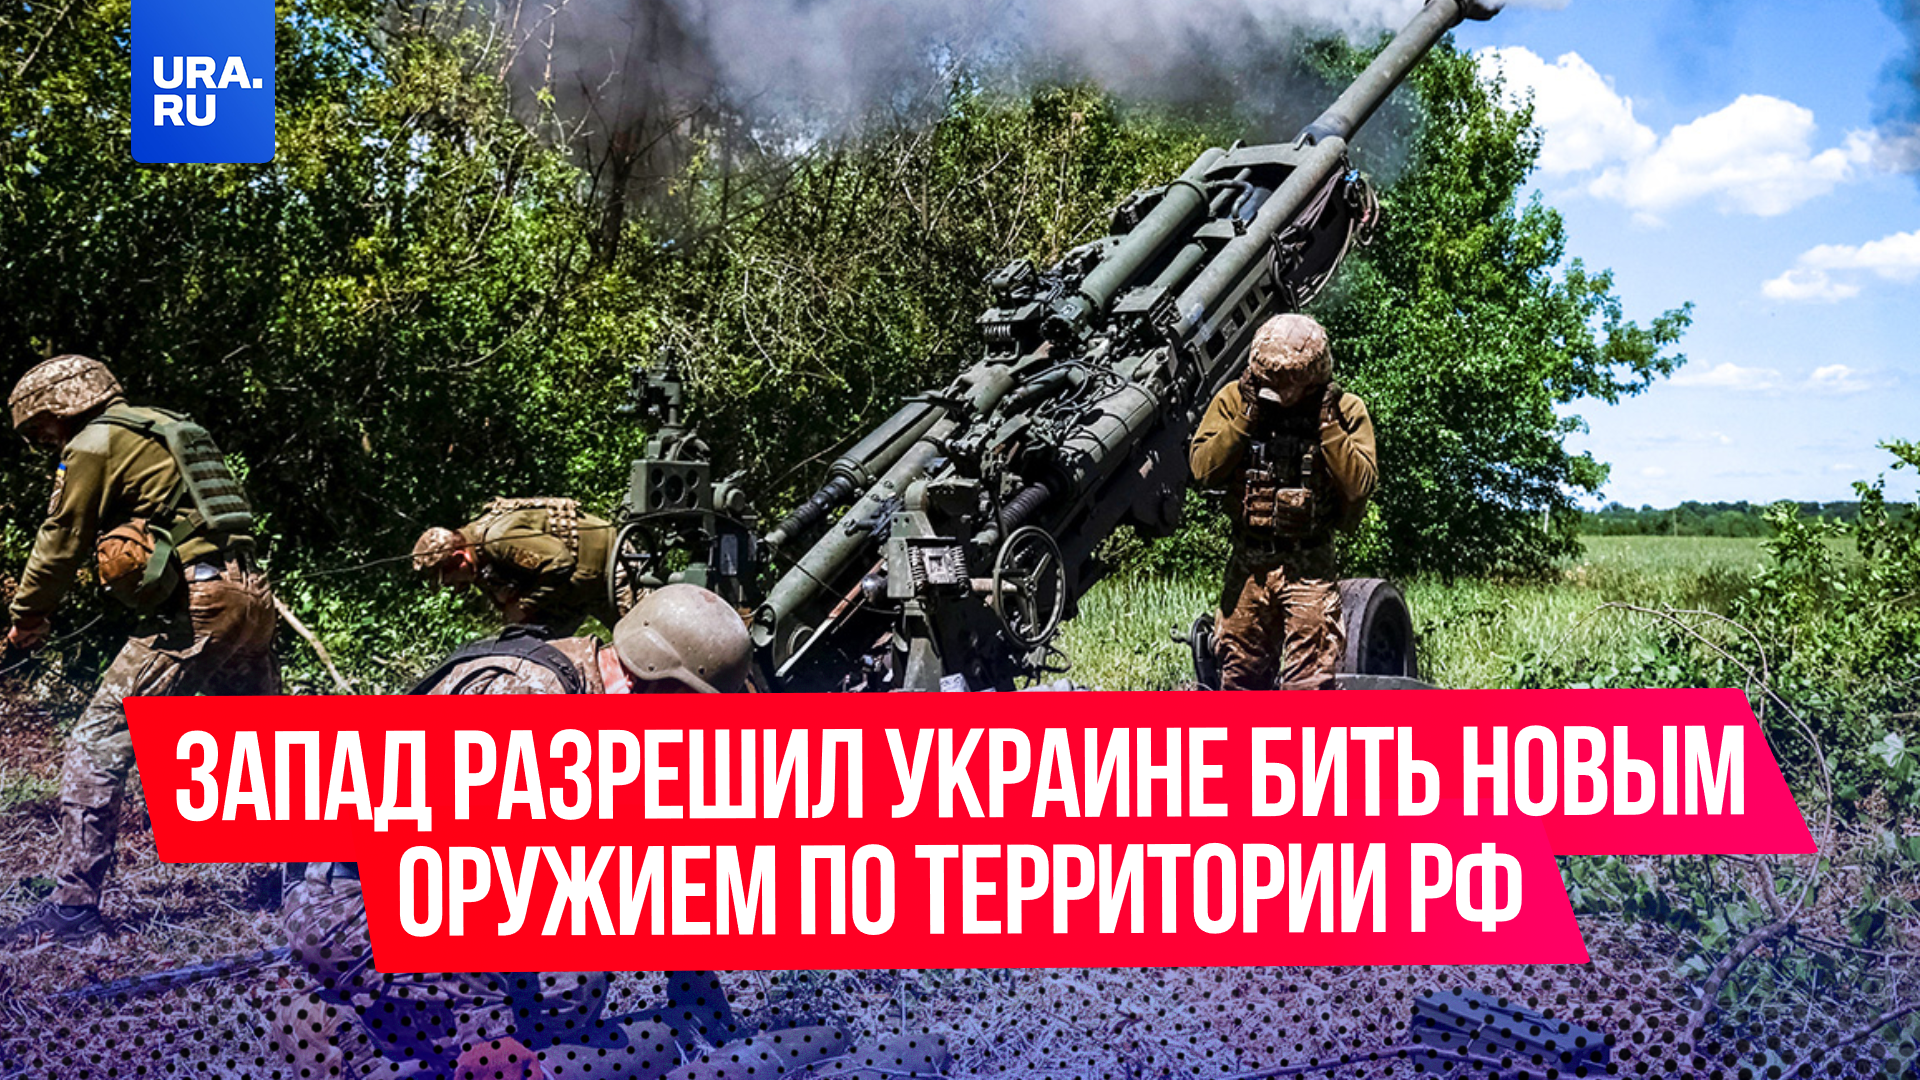 Некоторые западные страны разрешили Украине бить новым оружием по территории России